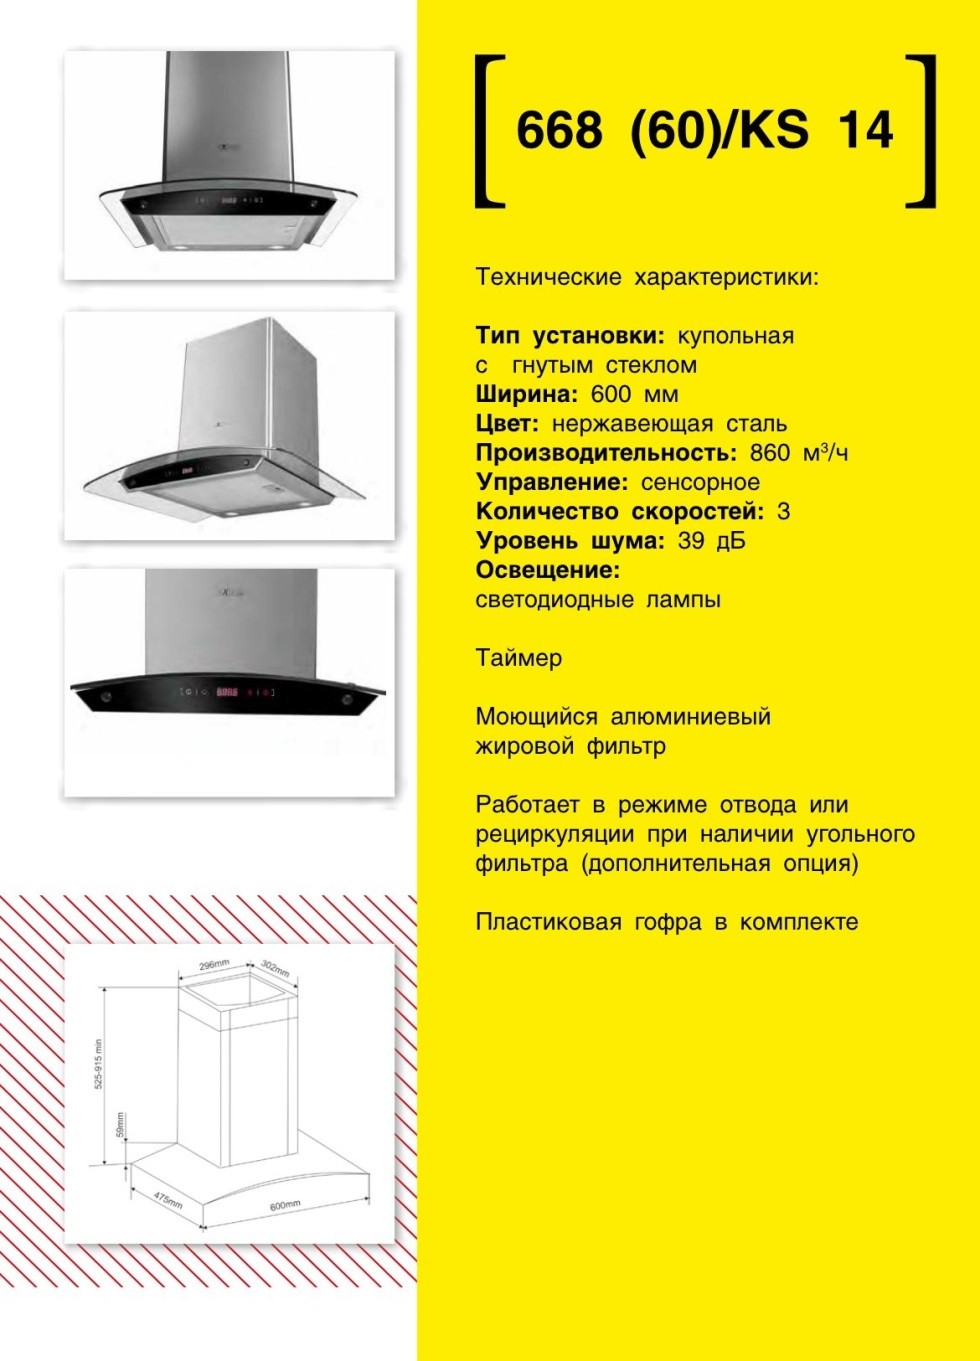 Купольная вытяжка EXITEQ KS14. Продажа встраиваемой техники в Беларуси недорого